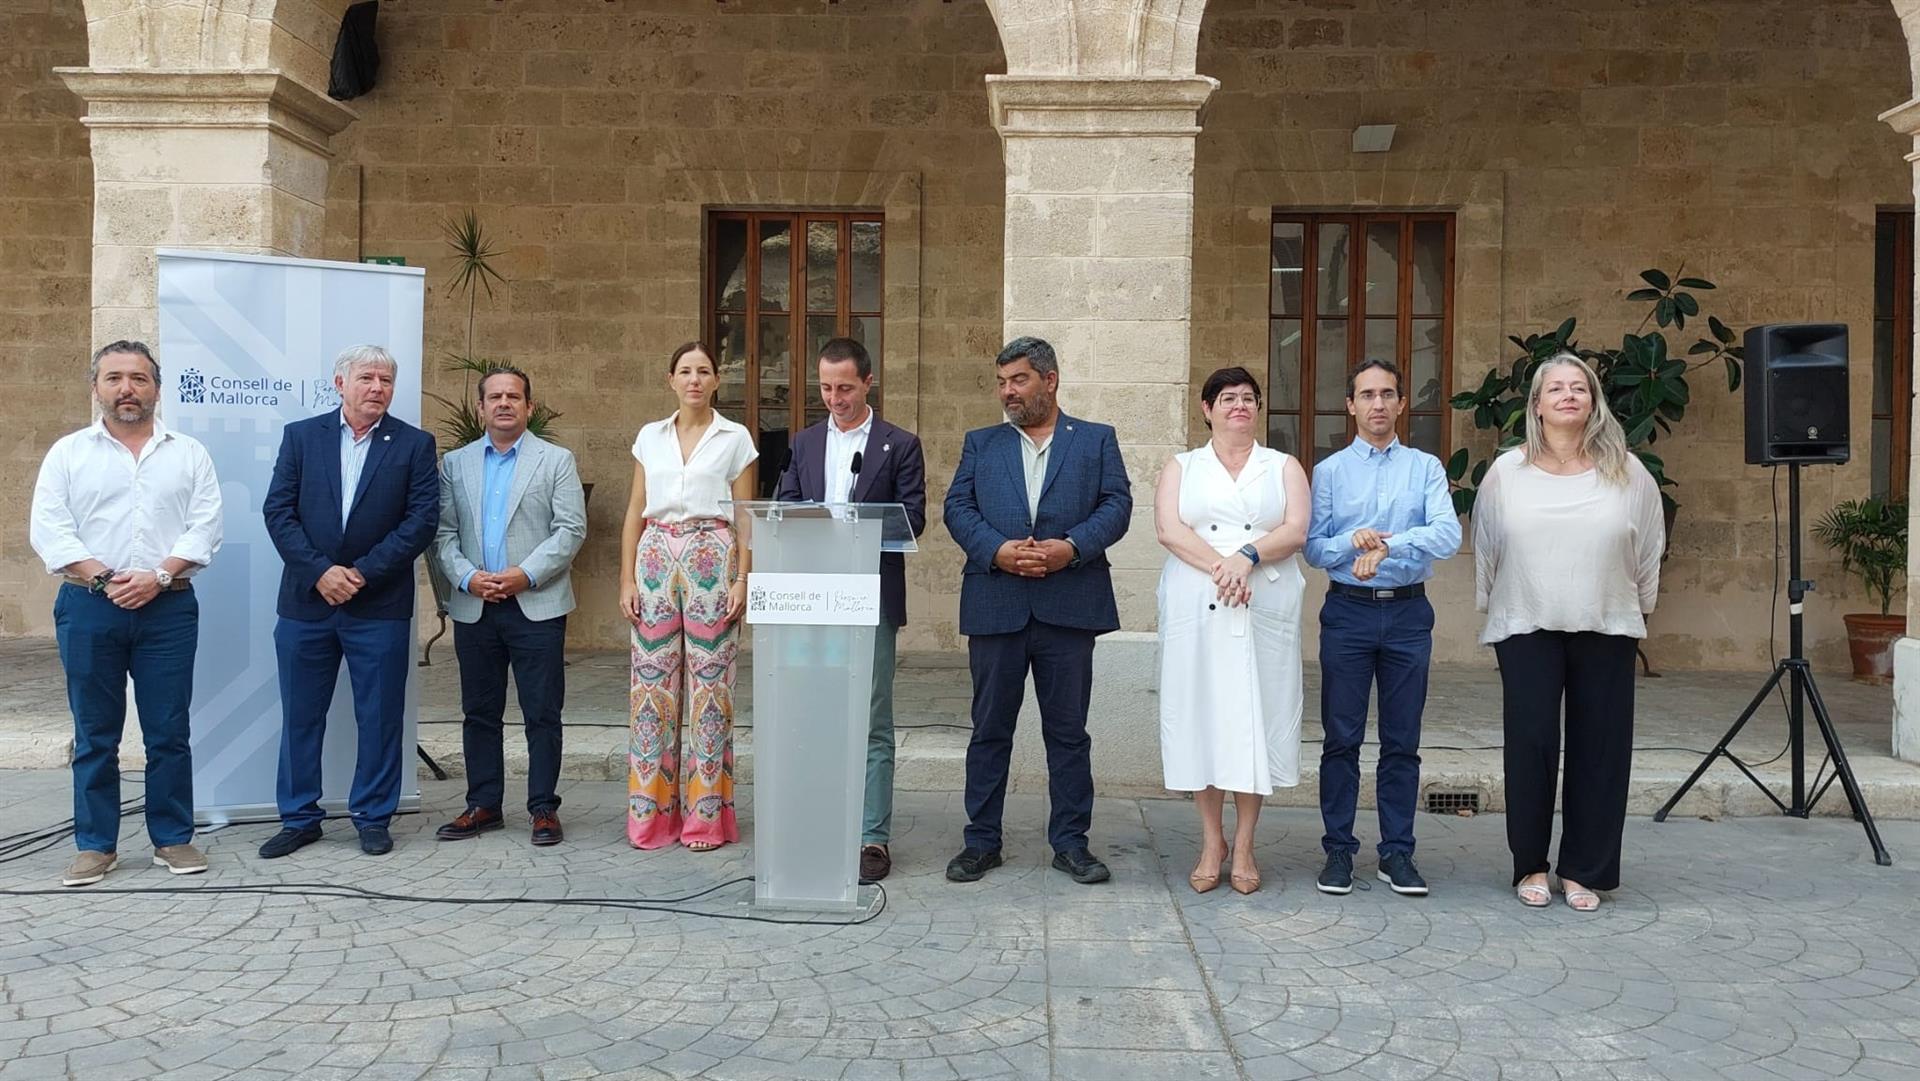 El presidente del Consell de Mallorca, Llorenç Galmés, junto con los miembros del Ejecutivo insular en una rueda de prensa en la Misericòrdia. - EUROPA PRESS